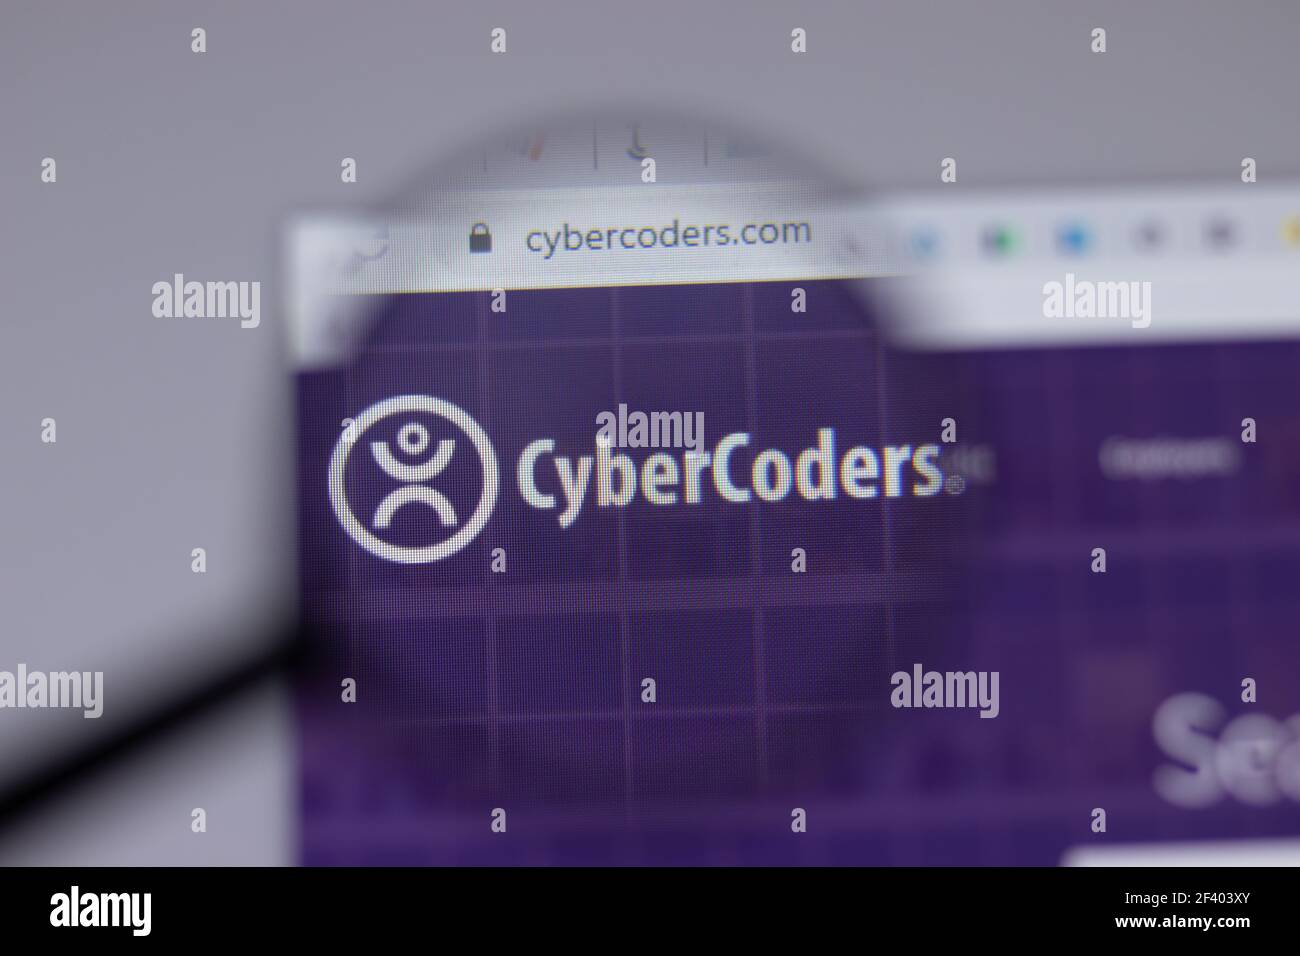 New York, USA - 18 Marzo 2021: Icona del logo della società CyberCoders sul sito, Editoriale illustrativo Foto Stock